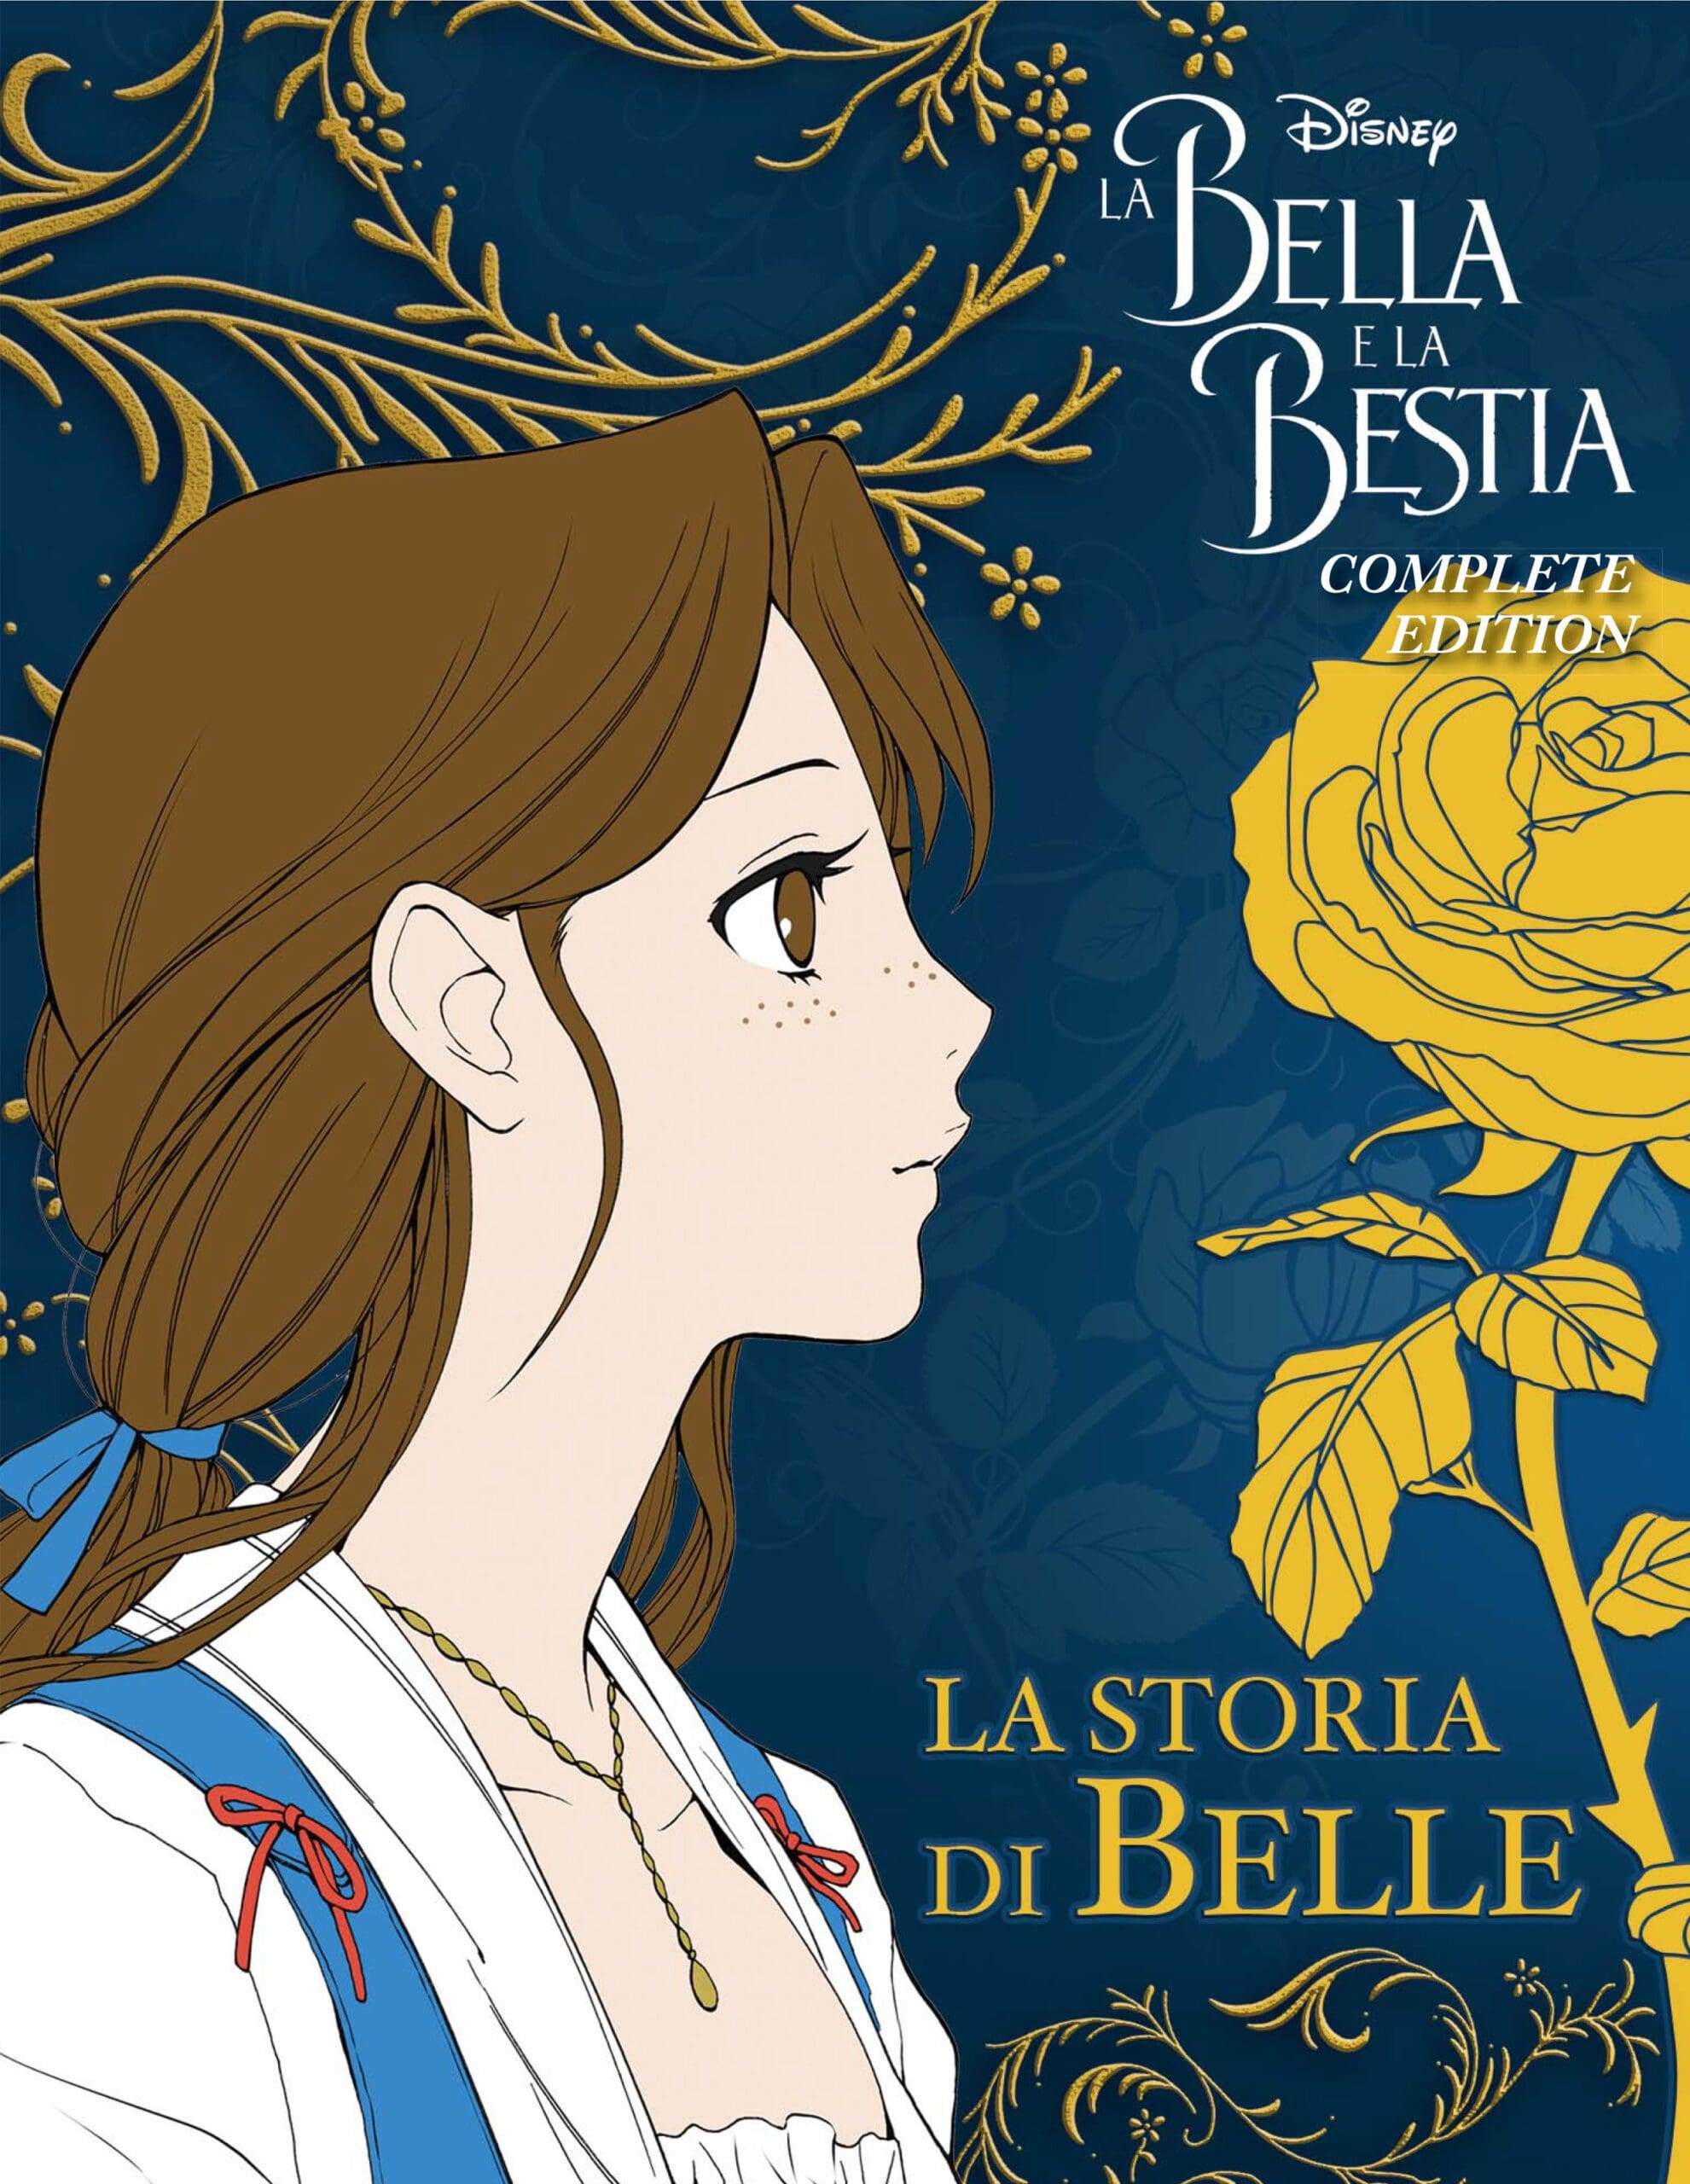 La Bella e la Bestia Complete Edition -L’adattamento a fumetti di uno dei classici Disney più amati 4